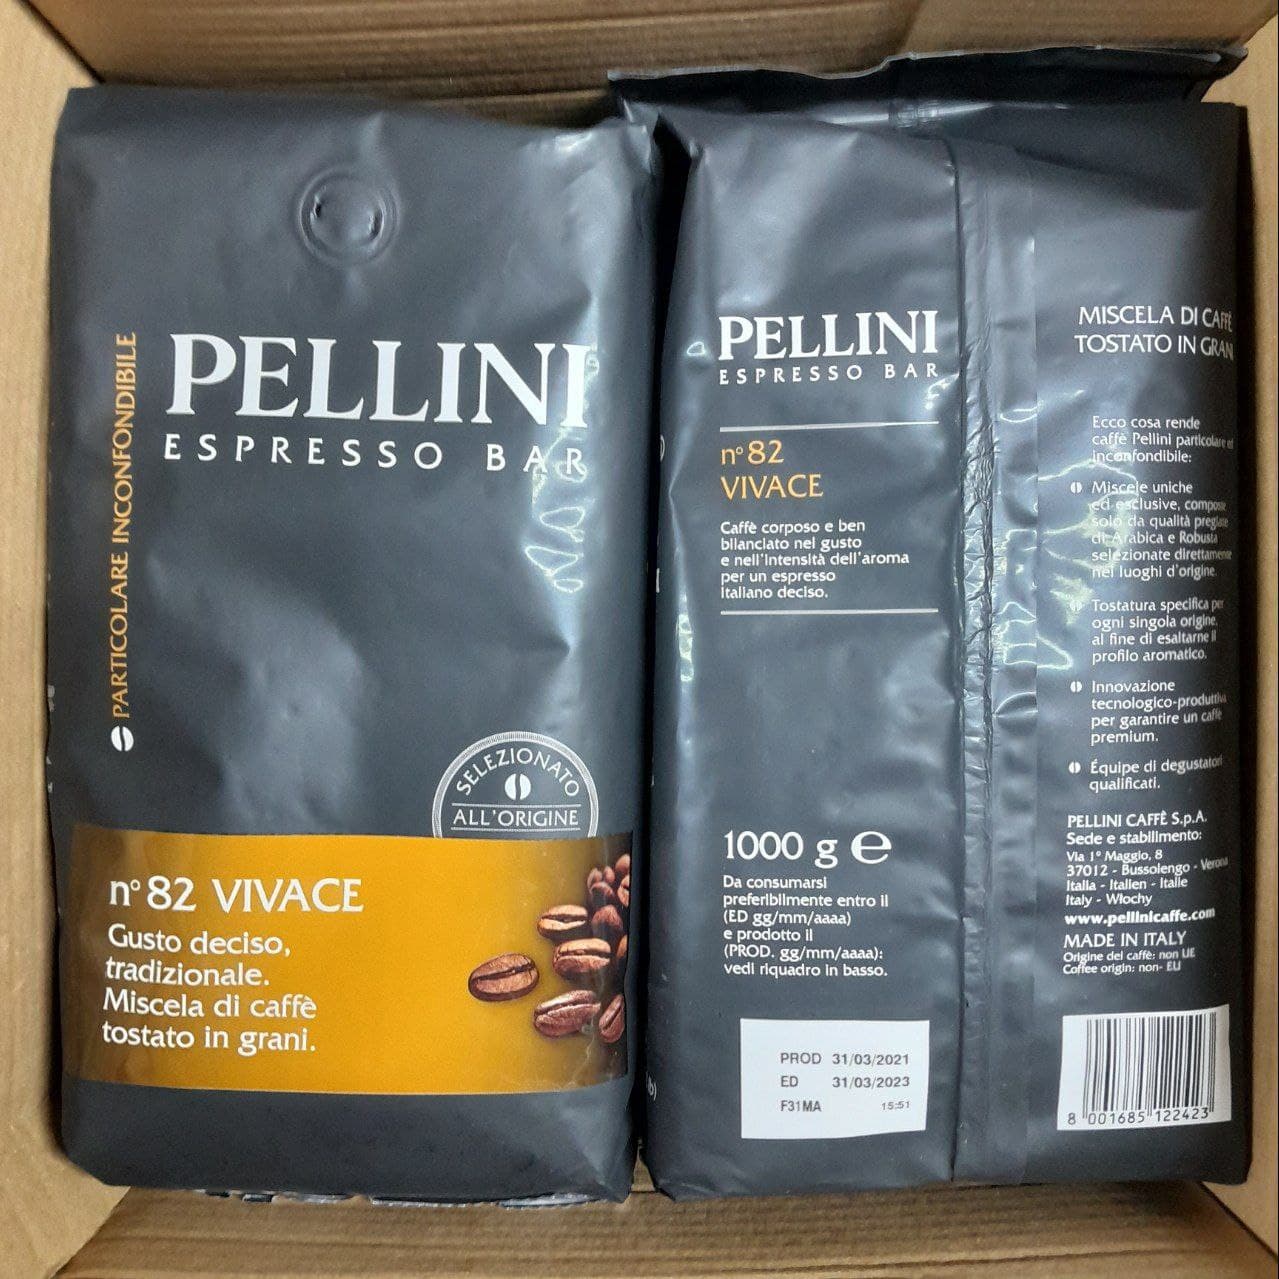 Зерновой кофе "PELLINI" Espresso Bar Vivace